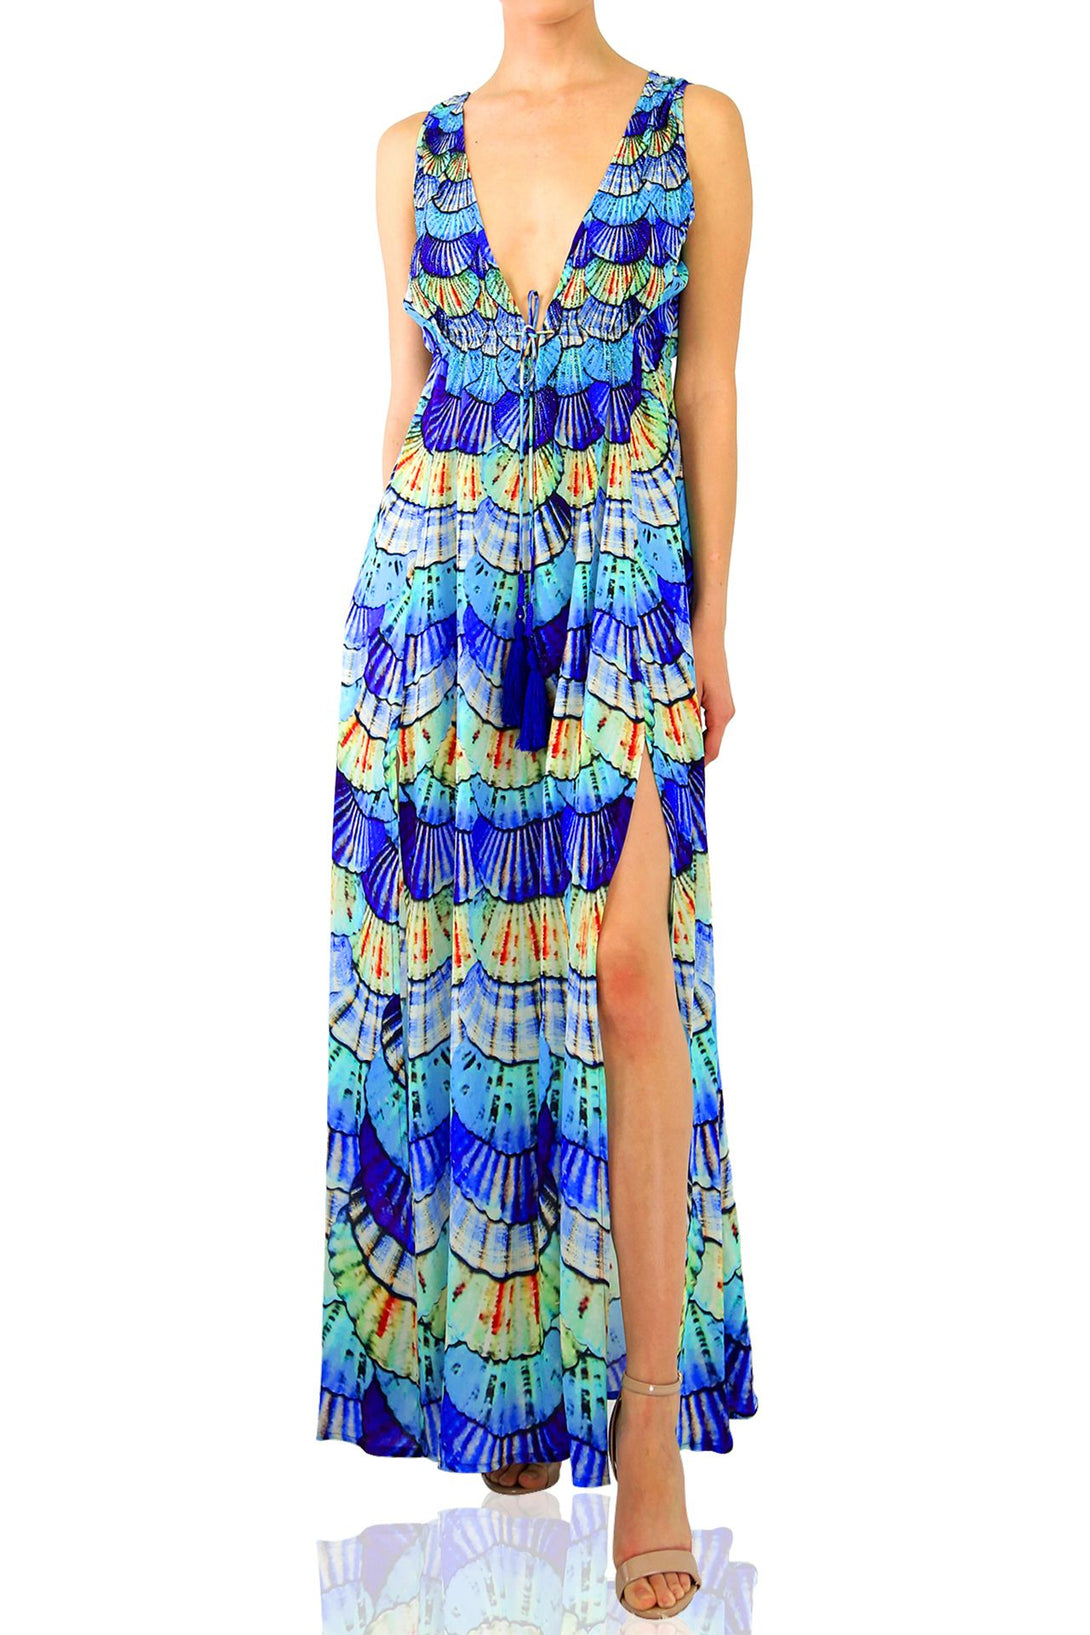 "maxi dresses for women" "Shahida Parides" "sexy blue dress" "floor length dress"